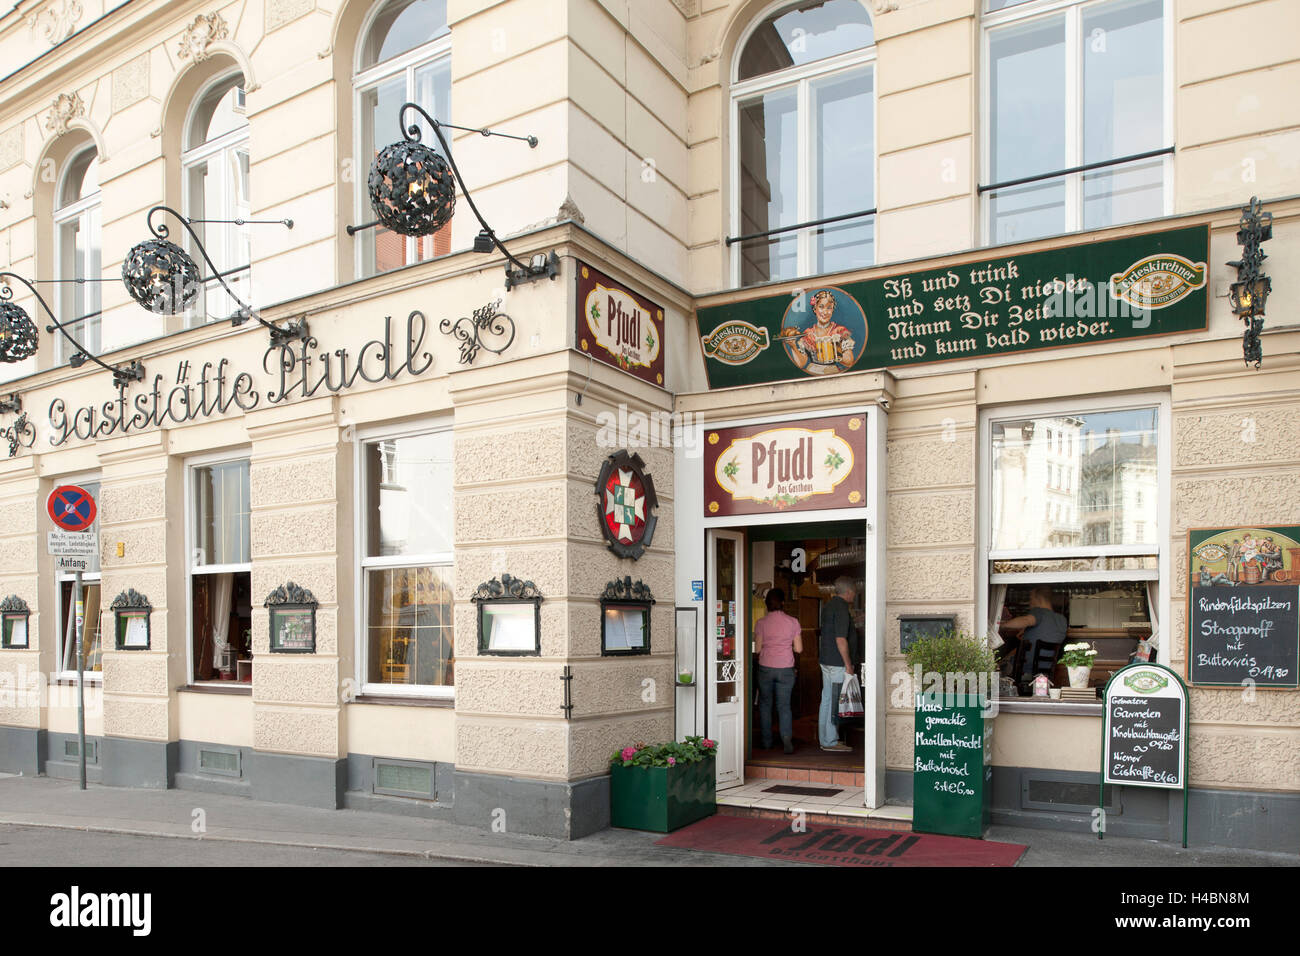 Austria, Vienna 1, restaurant Pfudl, Bäckerstrasse 22 Stock Photo